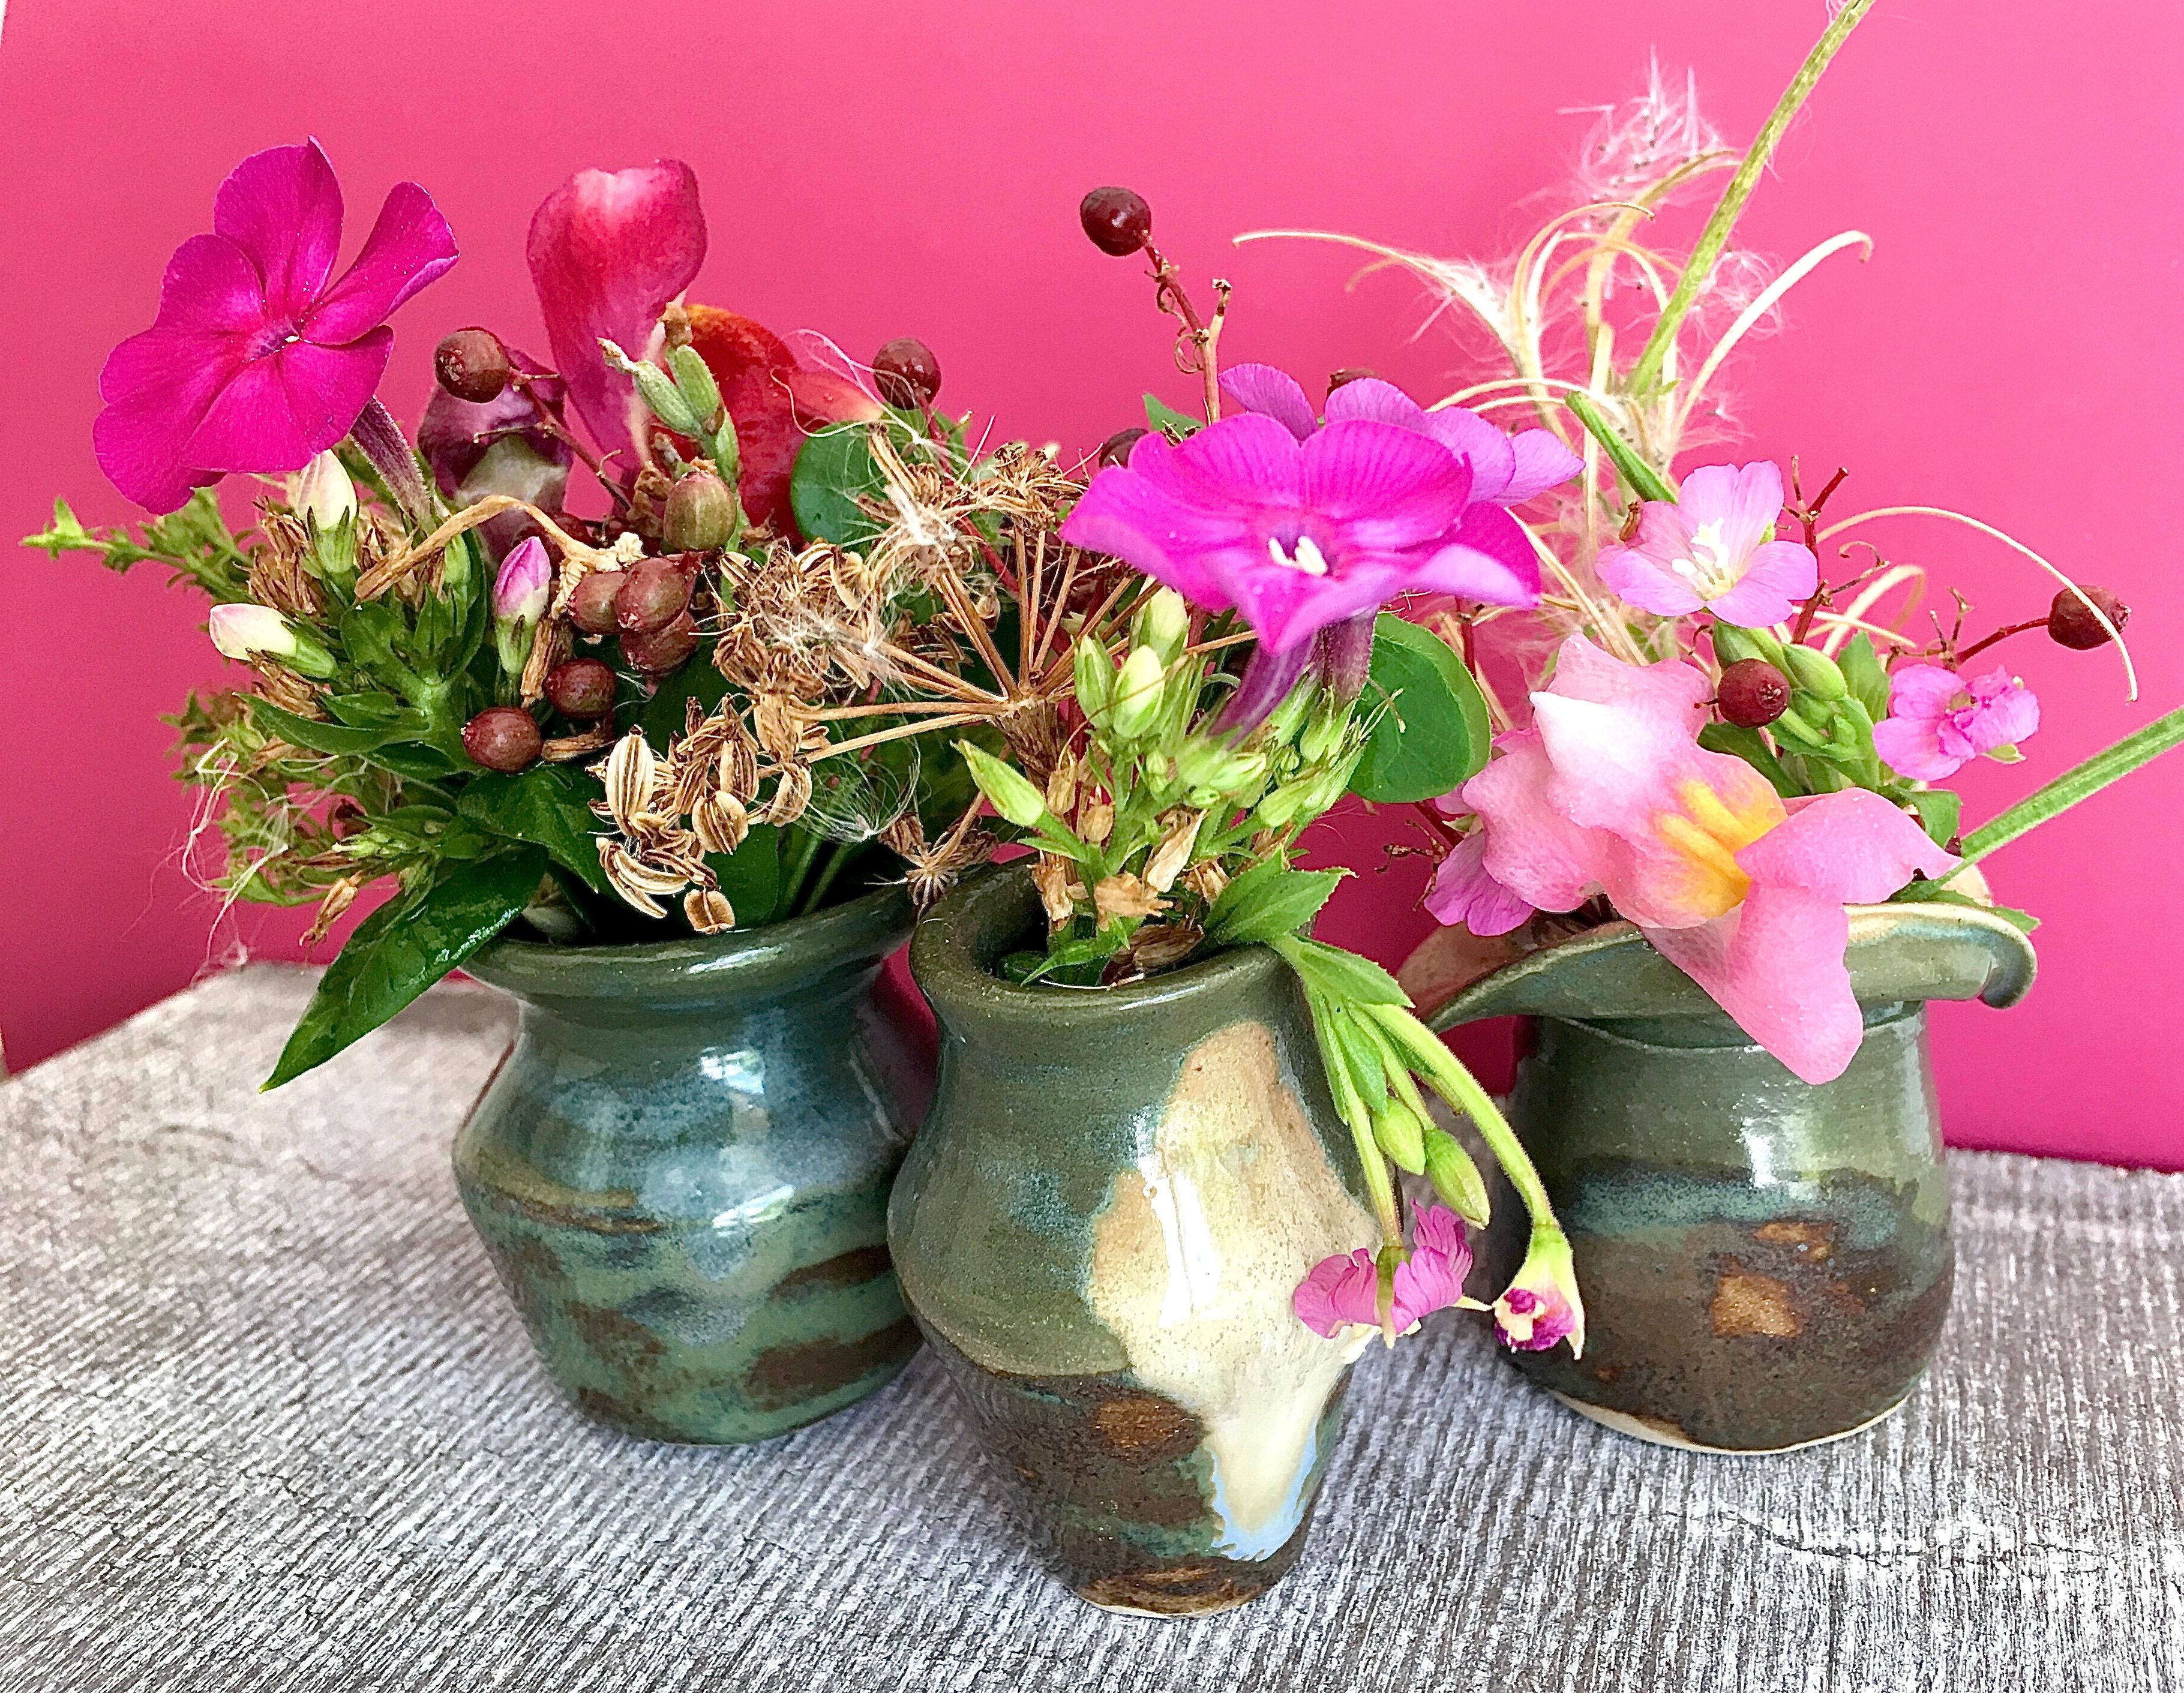 August-Farbflash -
Mini-Vasen mit Sommerblumen aus dem Garten
#minivasen #august #tinypots #sommer #vasenliebe 